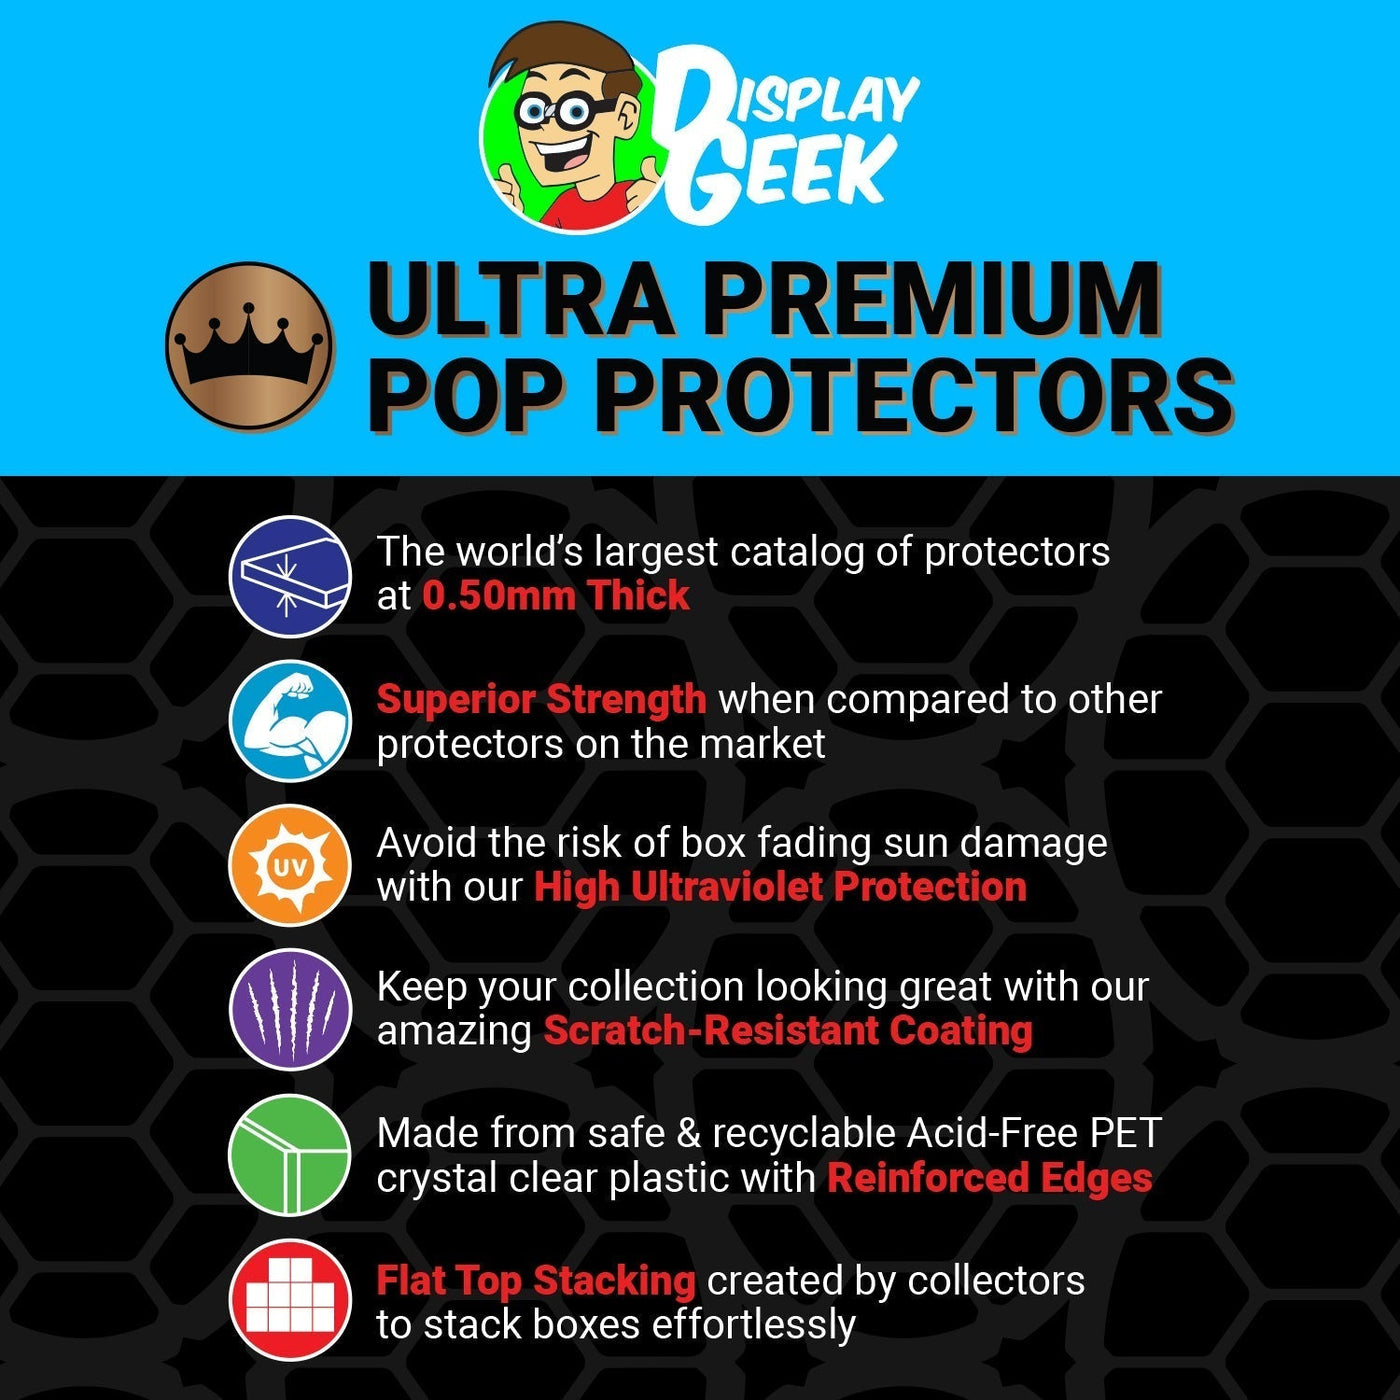 Pop Protector for 2 Pack WWE Undertaker & Paul Bearer Funko Pop on The Protector Guide App by Display Geek